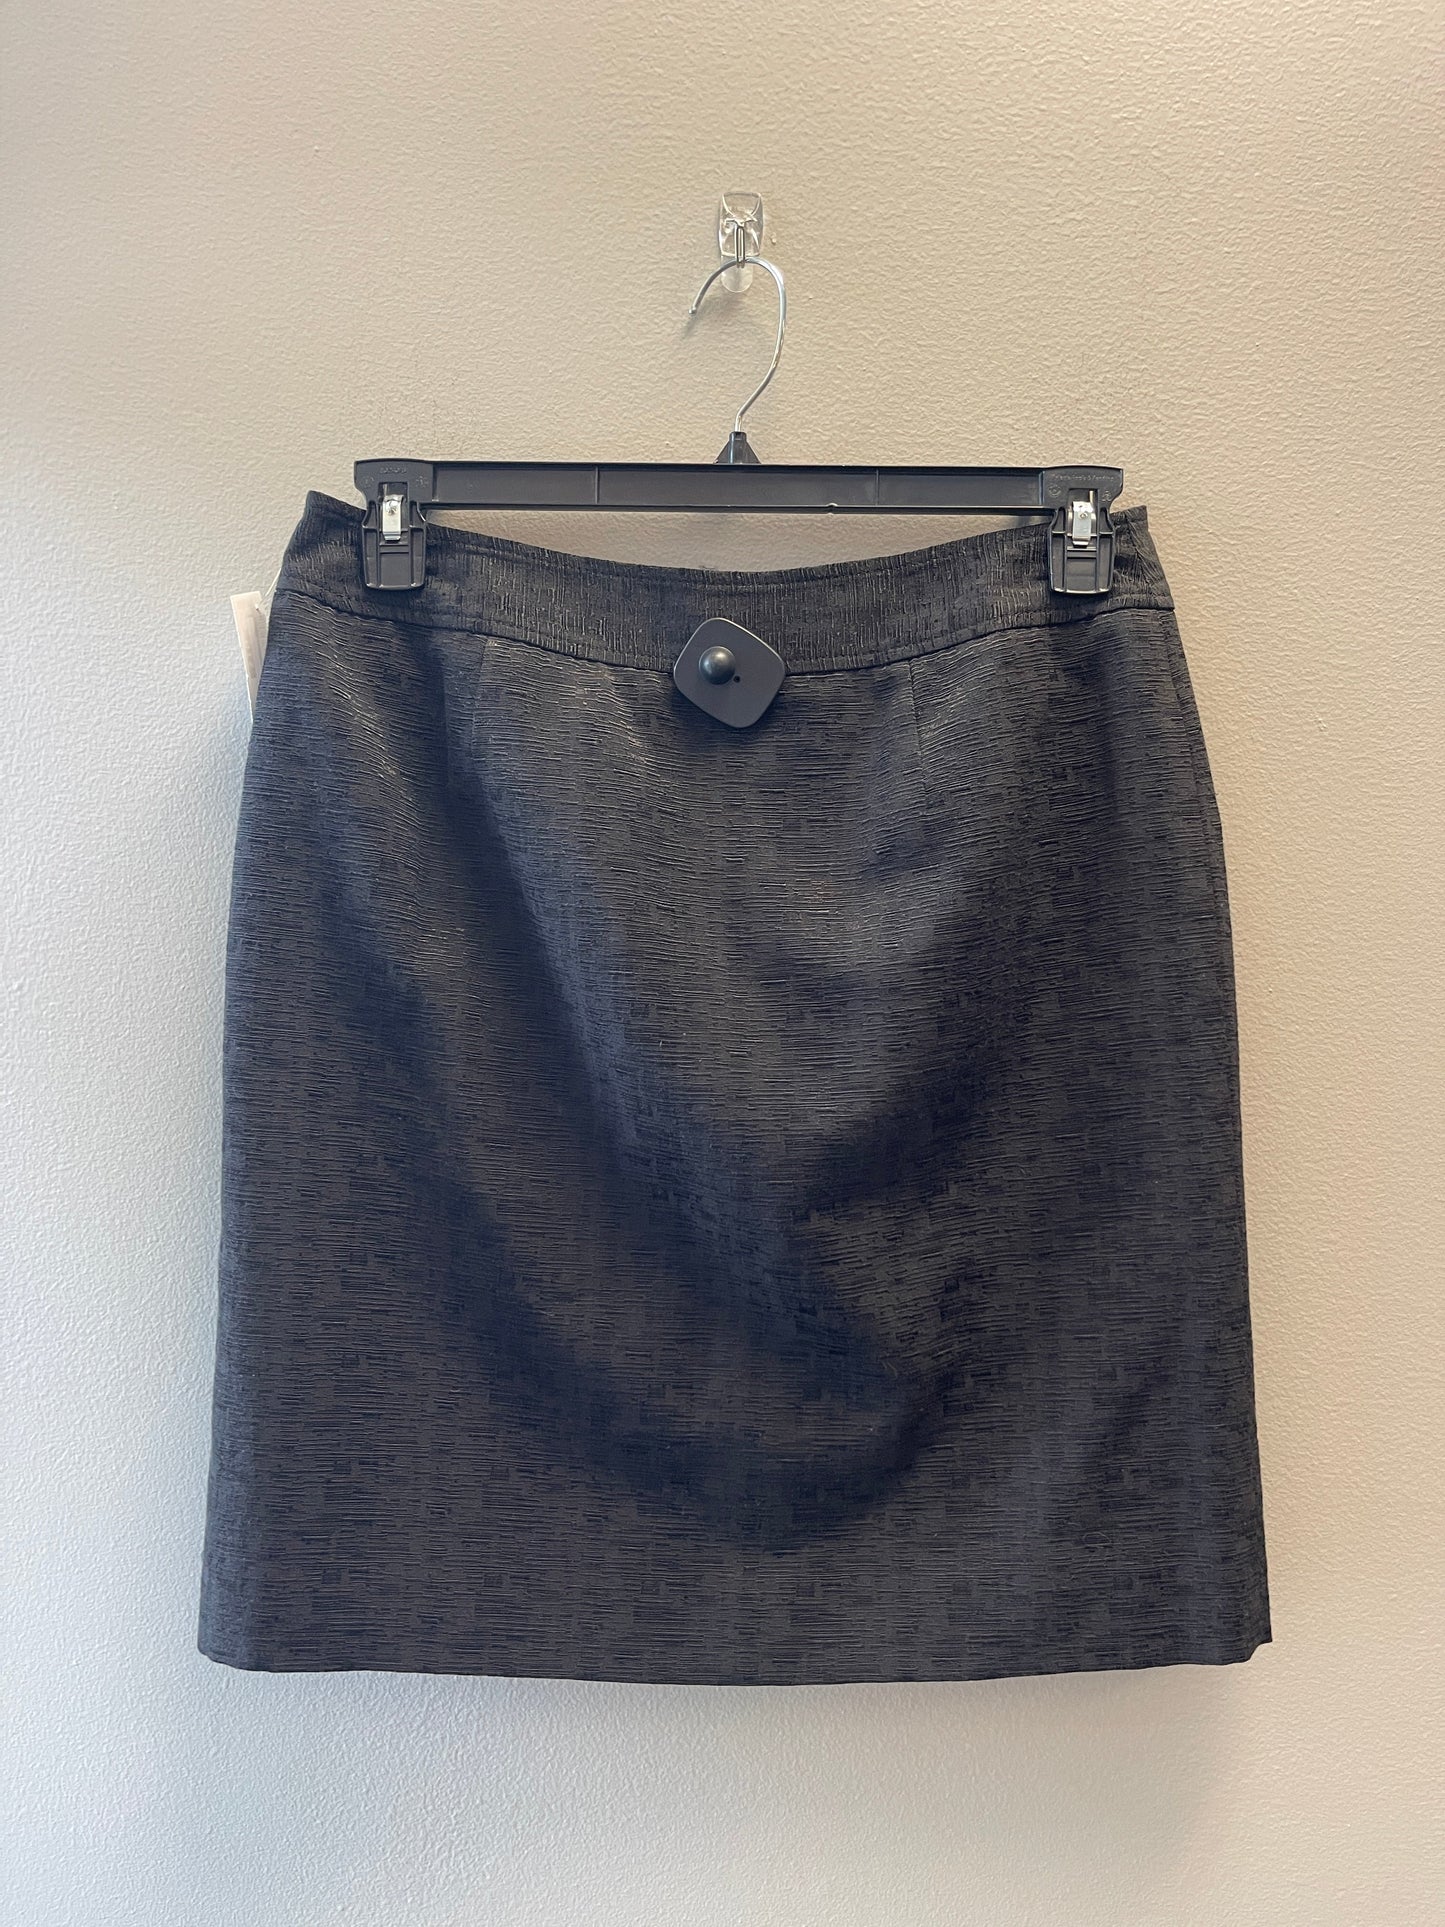 Skirt Midi By Anne Klein  Size: 8